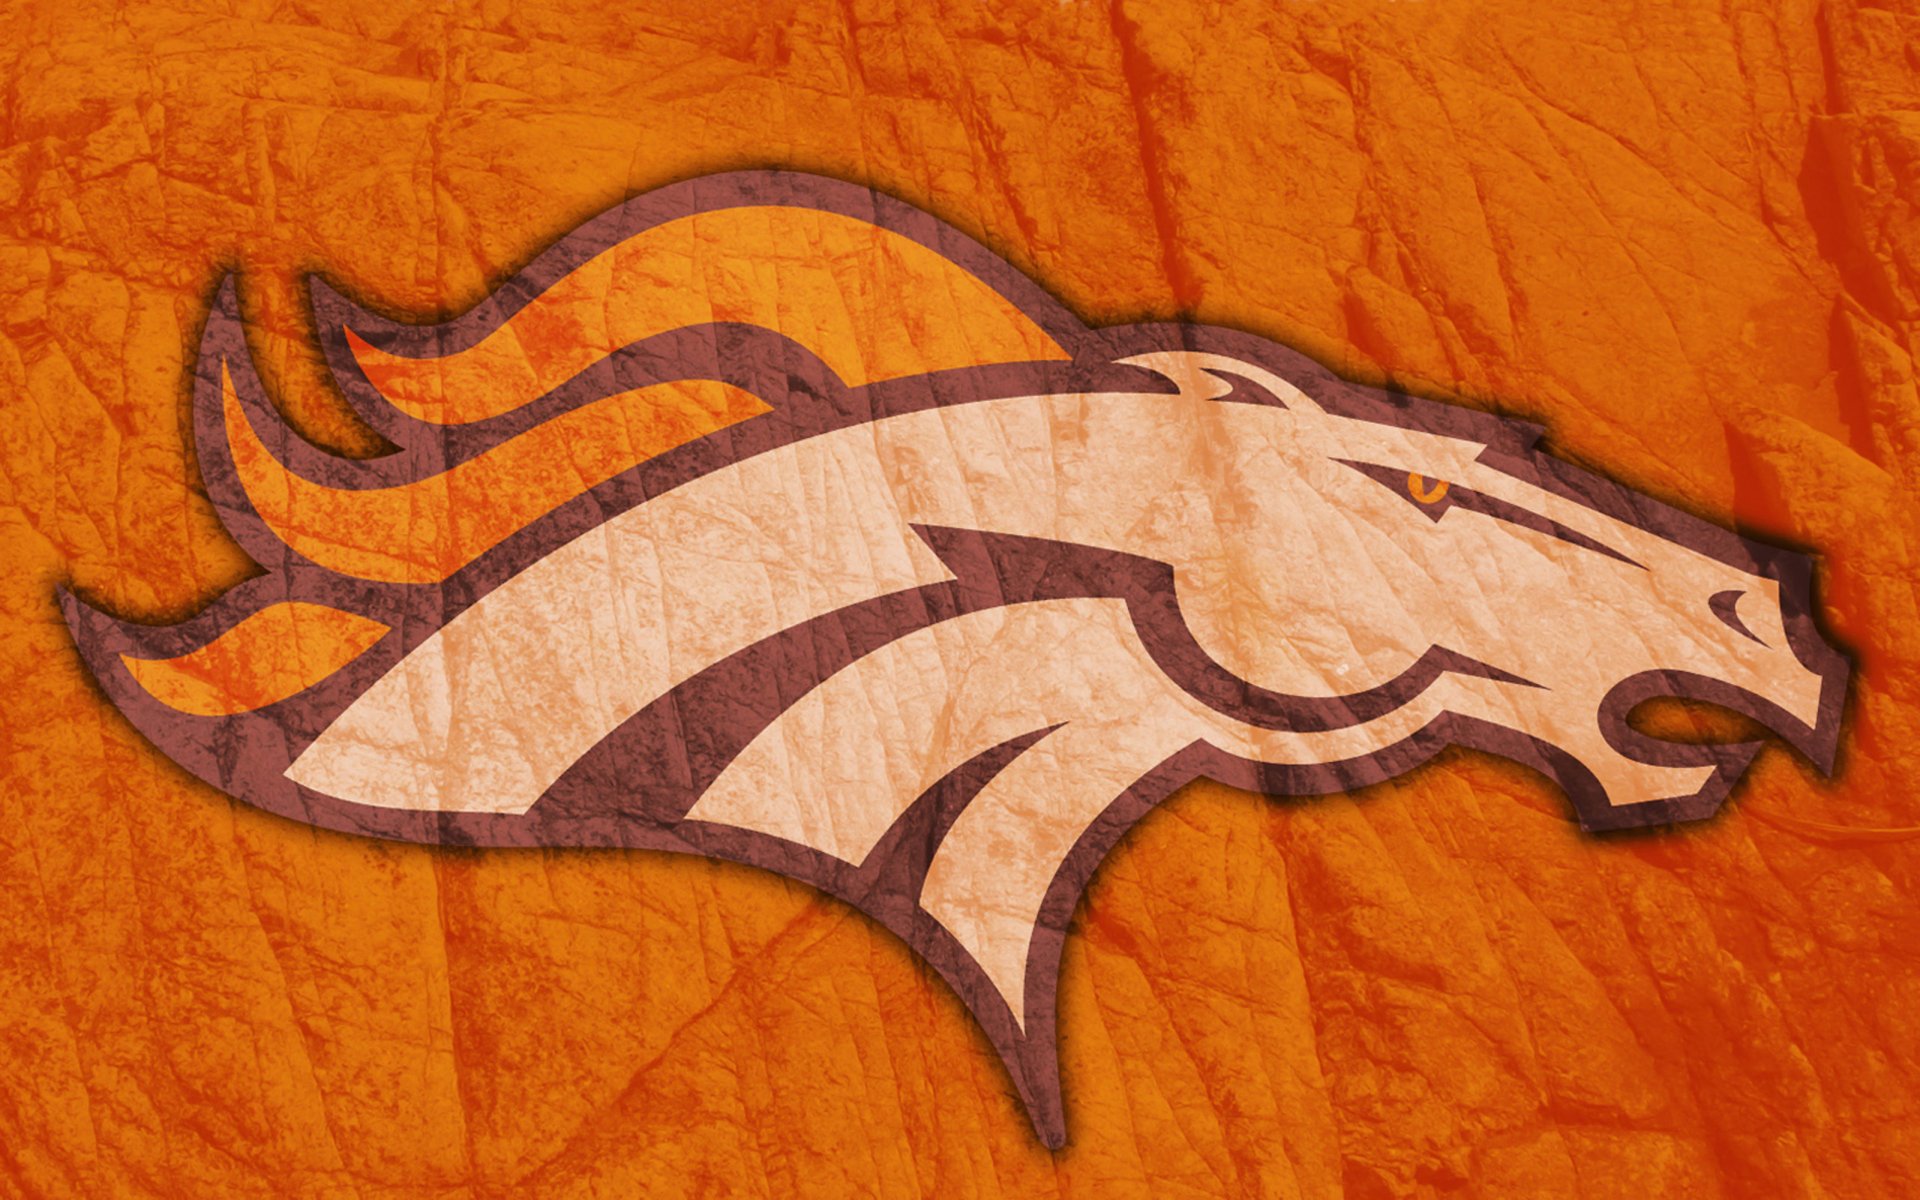 денвер бронкос лошадь голова грива пламя рисунок эмблема американский футбол логотип 2014